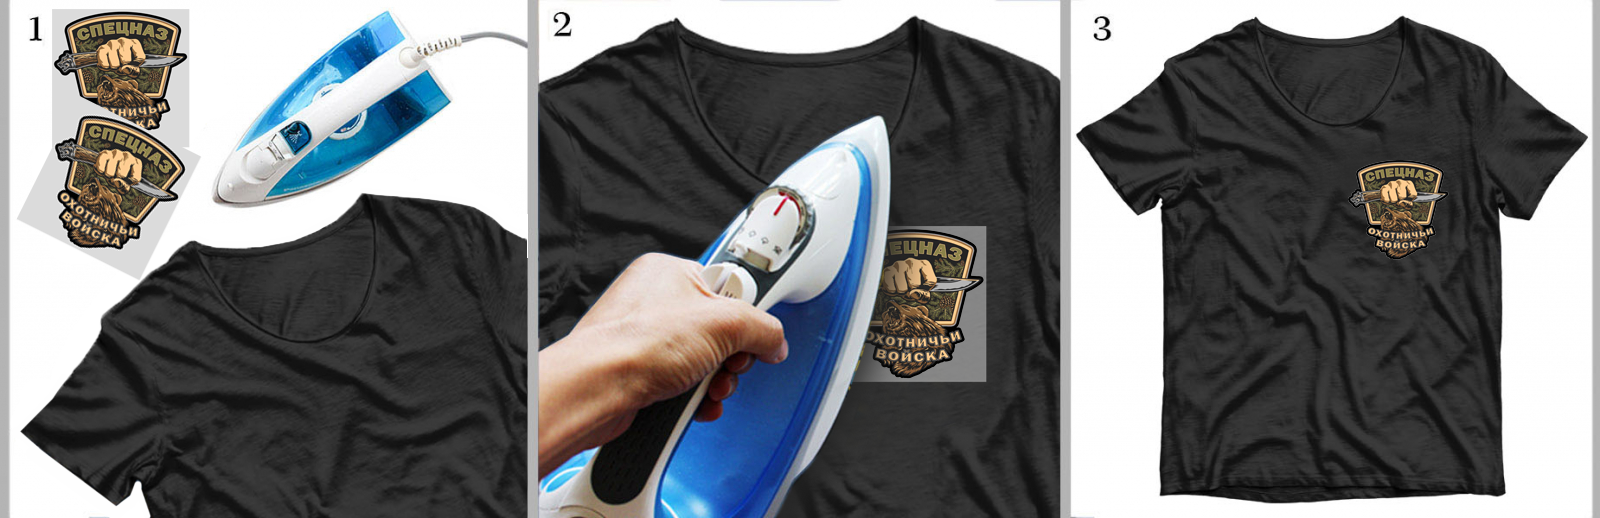 Черная мужская футболка с эмблемой Охотничьих войск 